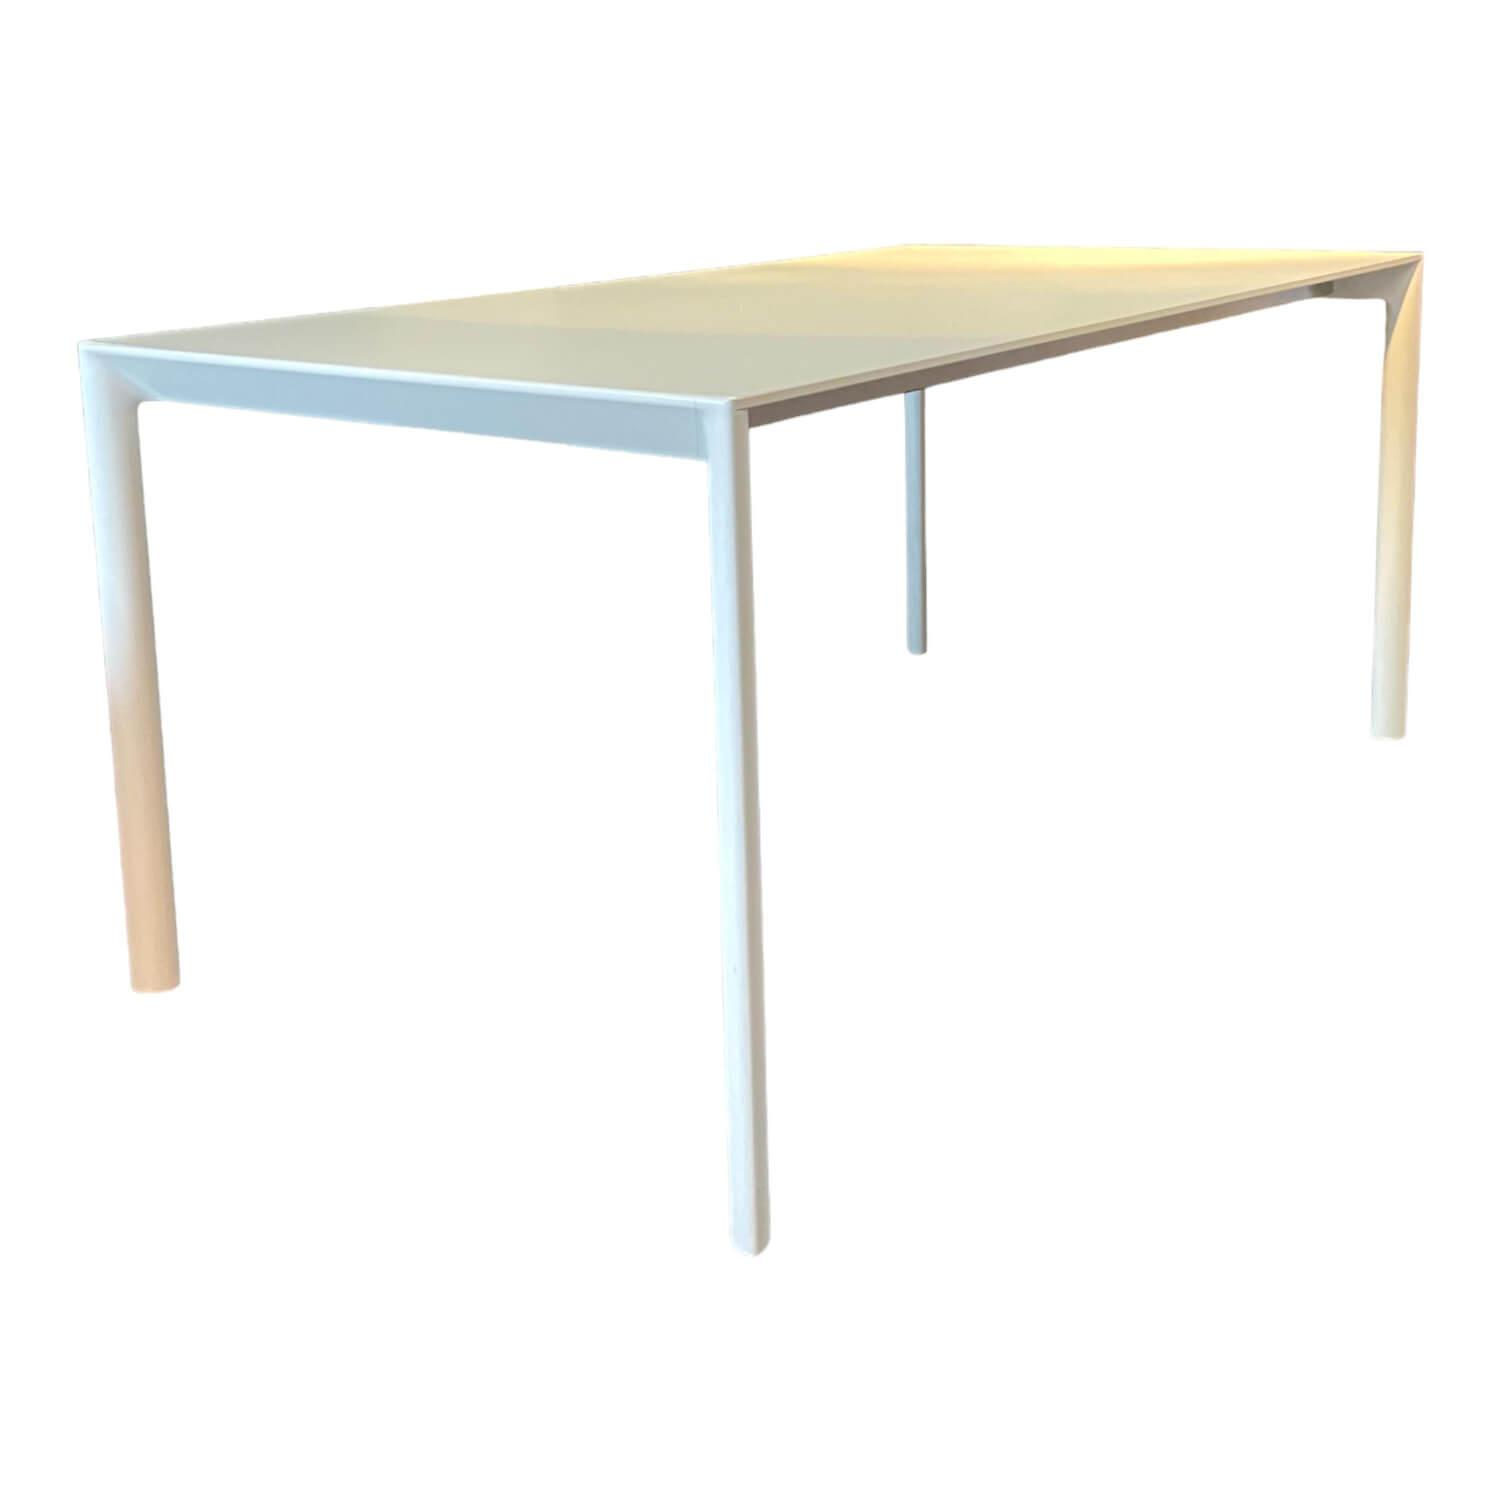 Esstisch Maki Tischplatte Laminiert Fenix Weiß Kos 0032 Beine Aluminium Weiß Lackiert